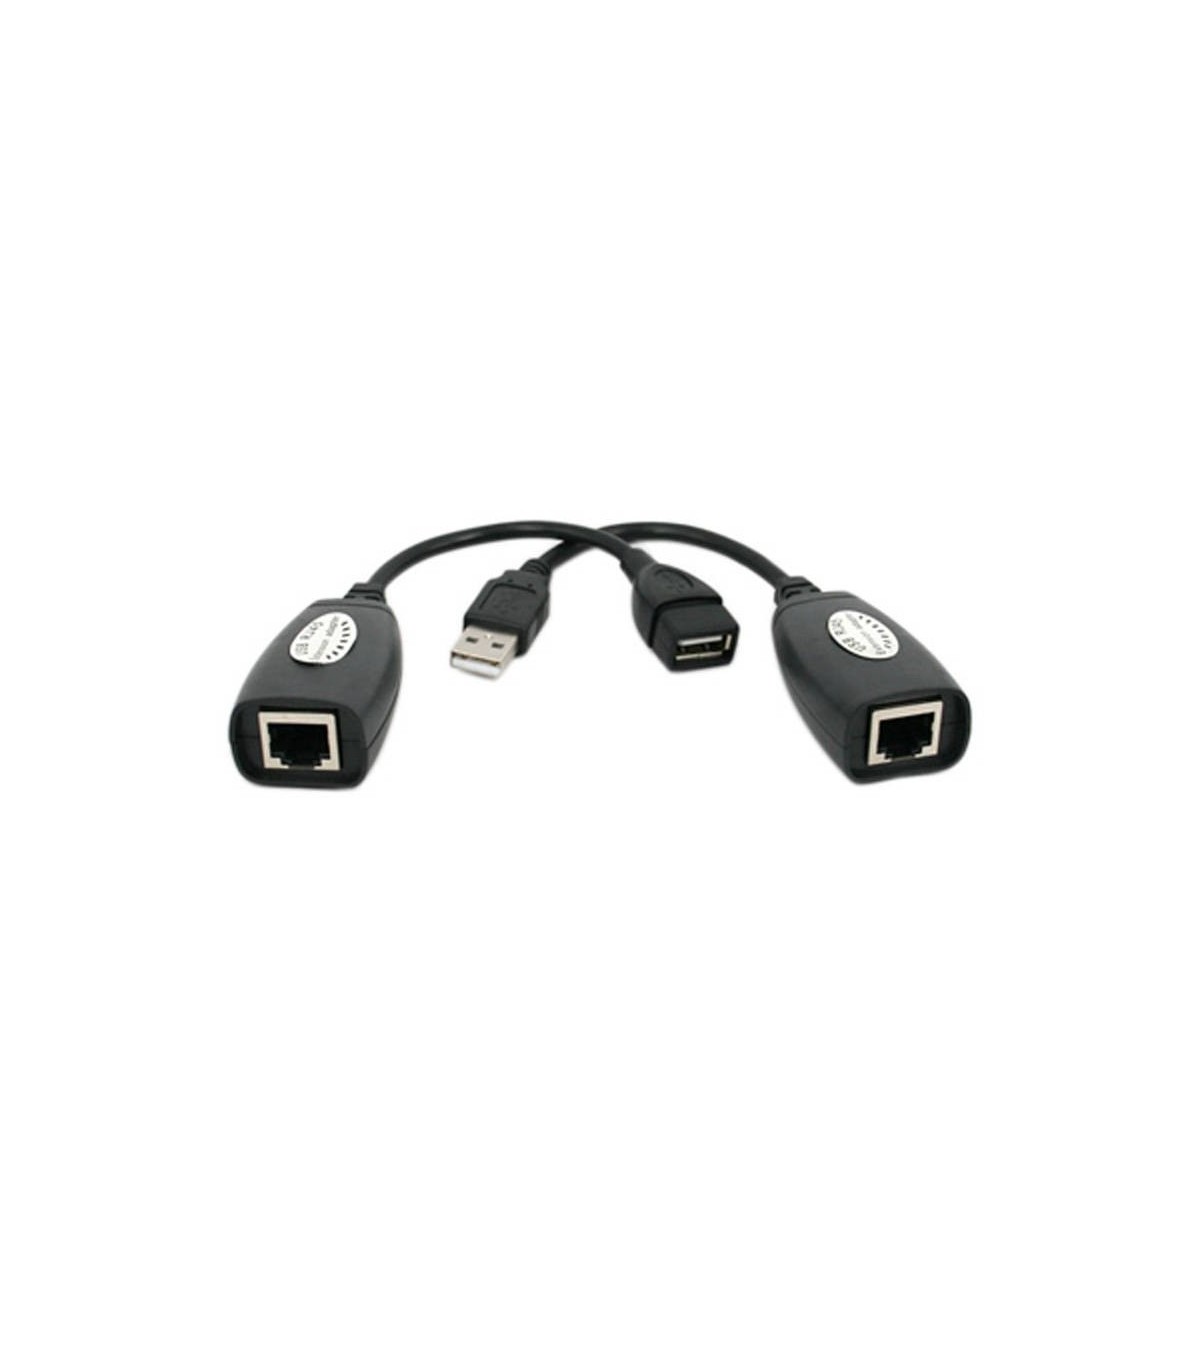 FBA-LYSB00K8INJIE EXTENSOR USB DE HASTA 46 METROS - Extensores de video -  Camaras de Seguridad Y Control de Acceso